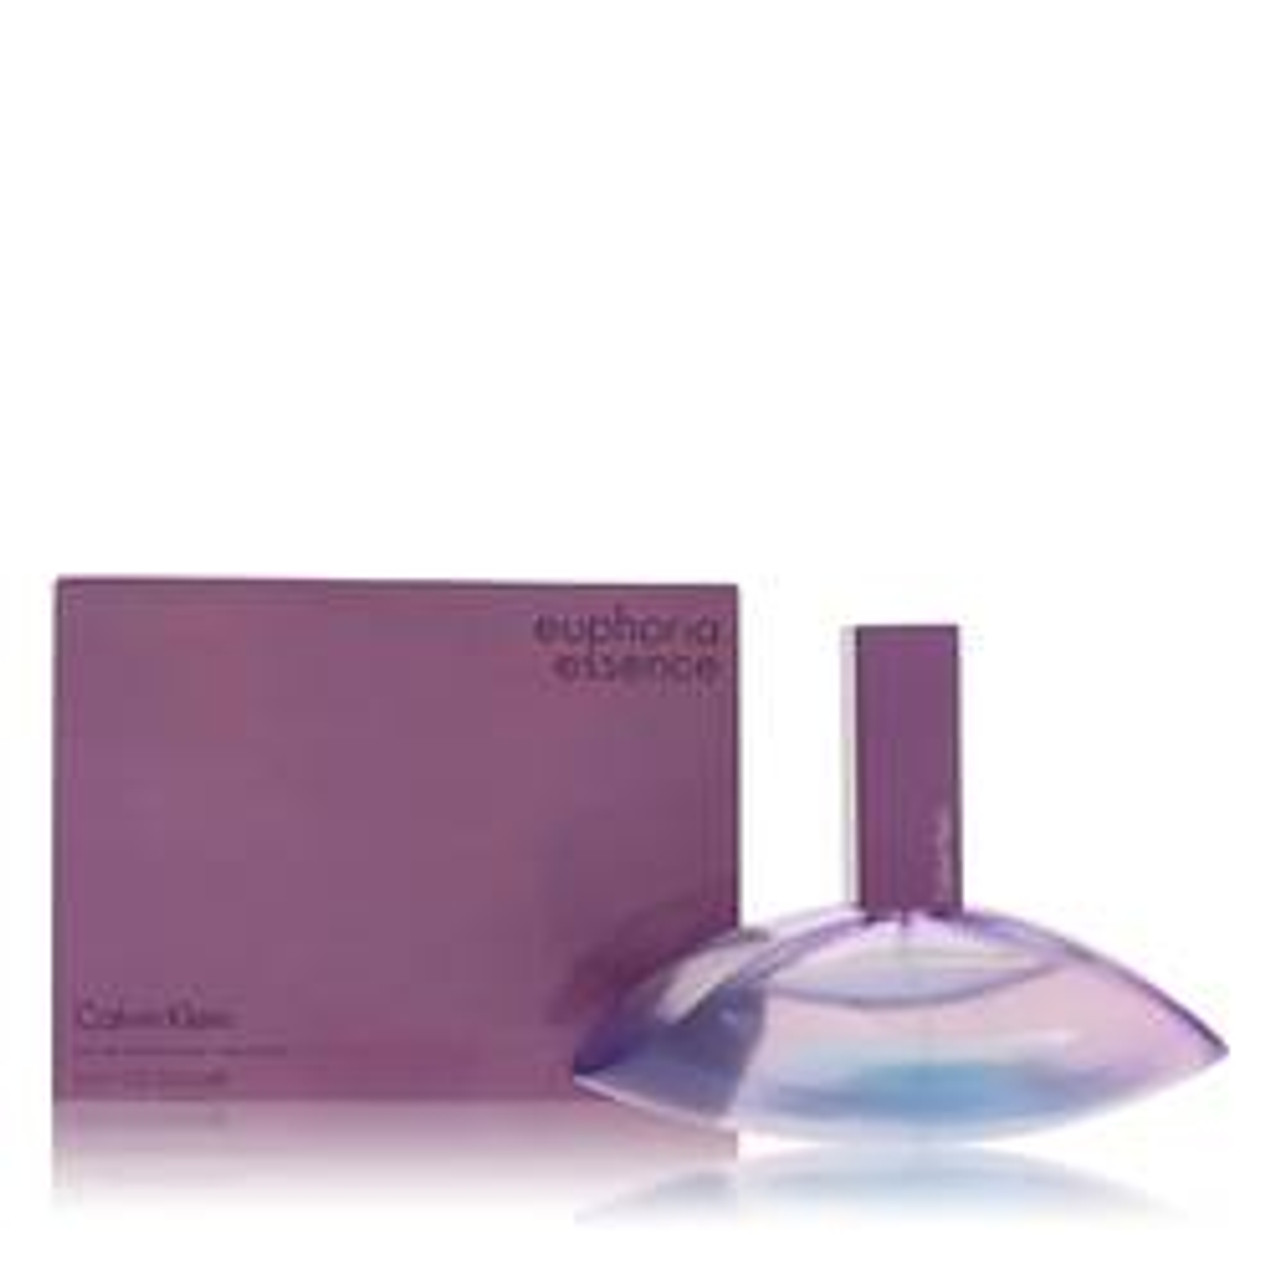 Euphoria Essence Perfume By Calvin Klein Eau De Parfum Spray 3.4 oz for Women - *Pre-Order